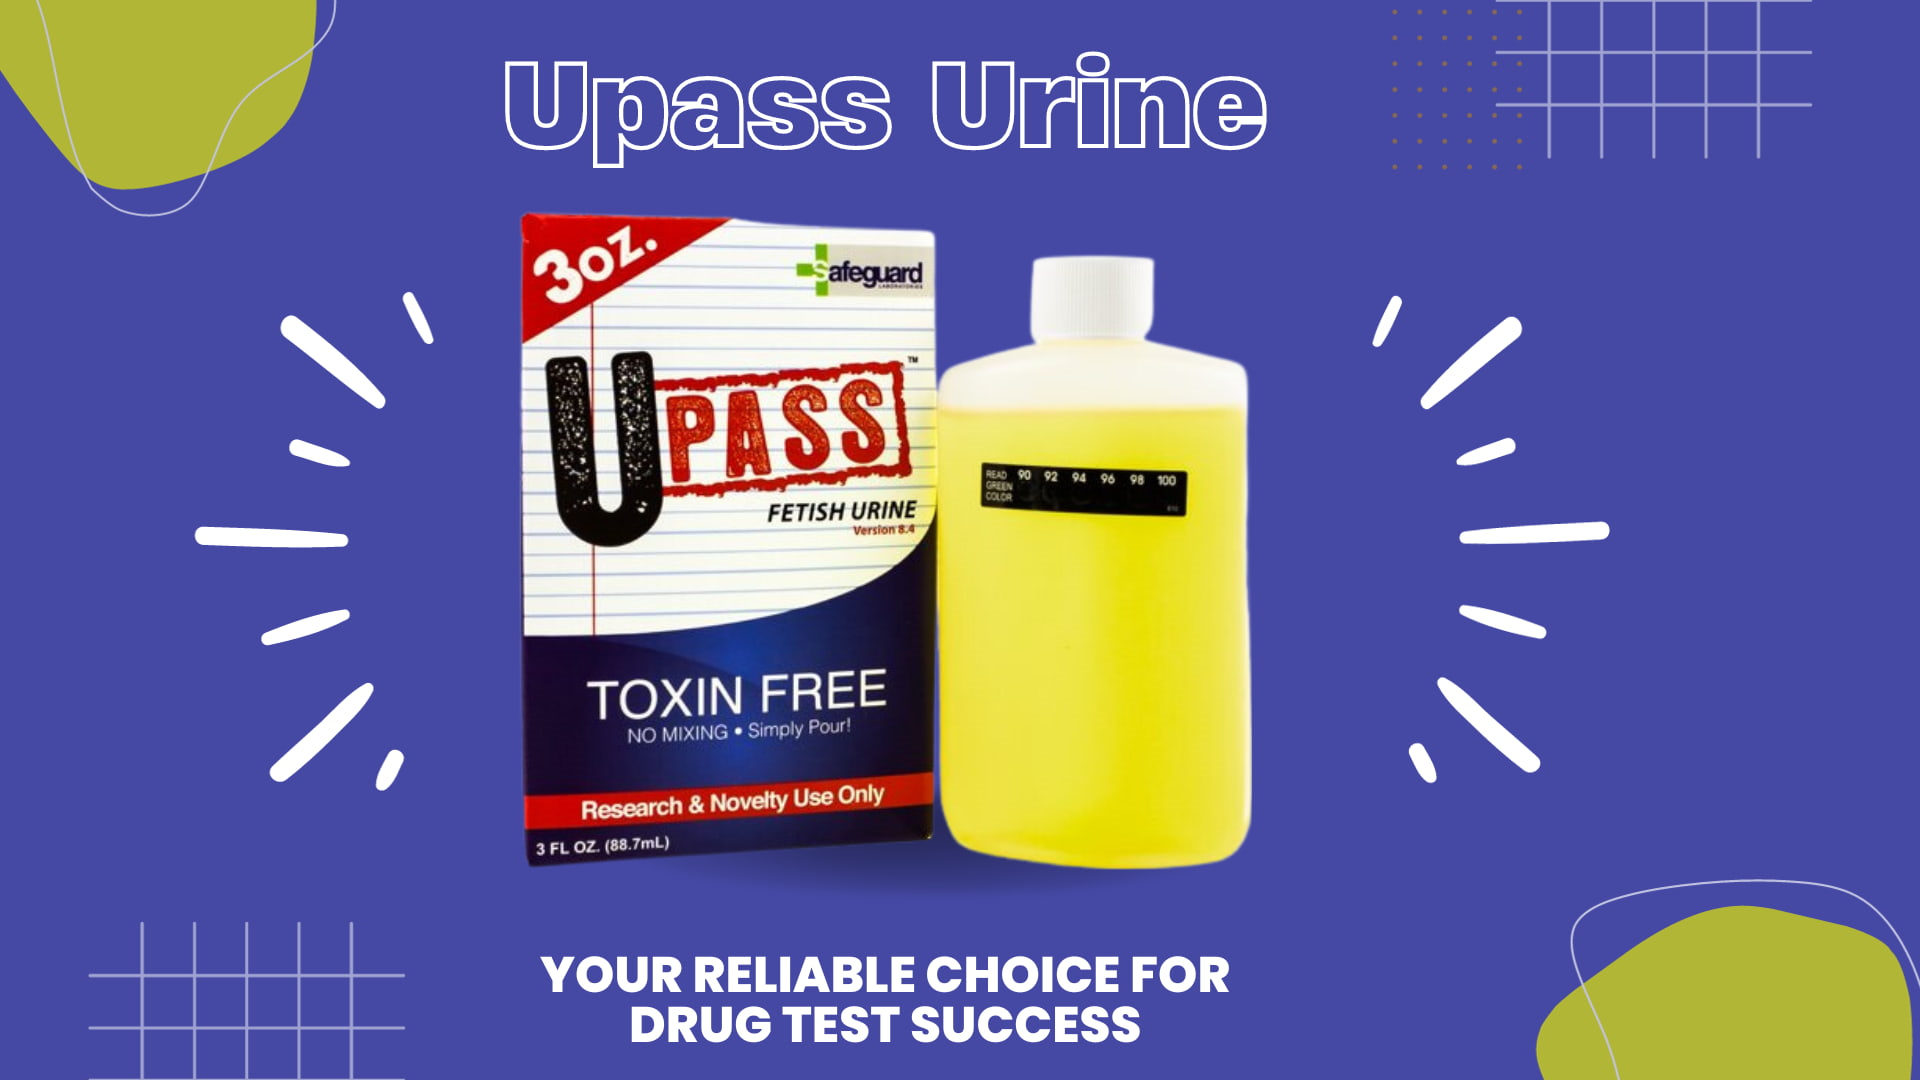 Upass Urine